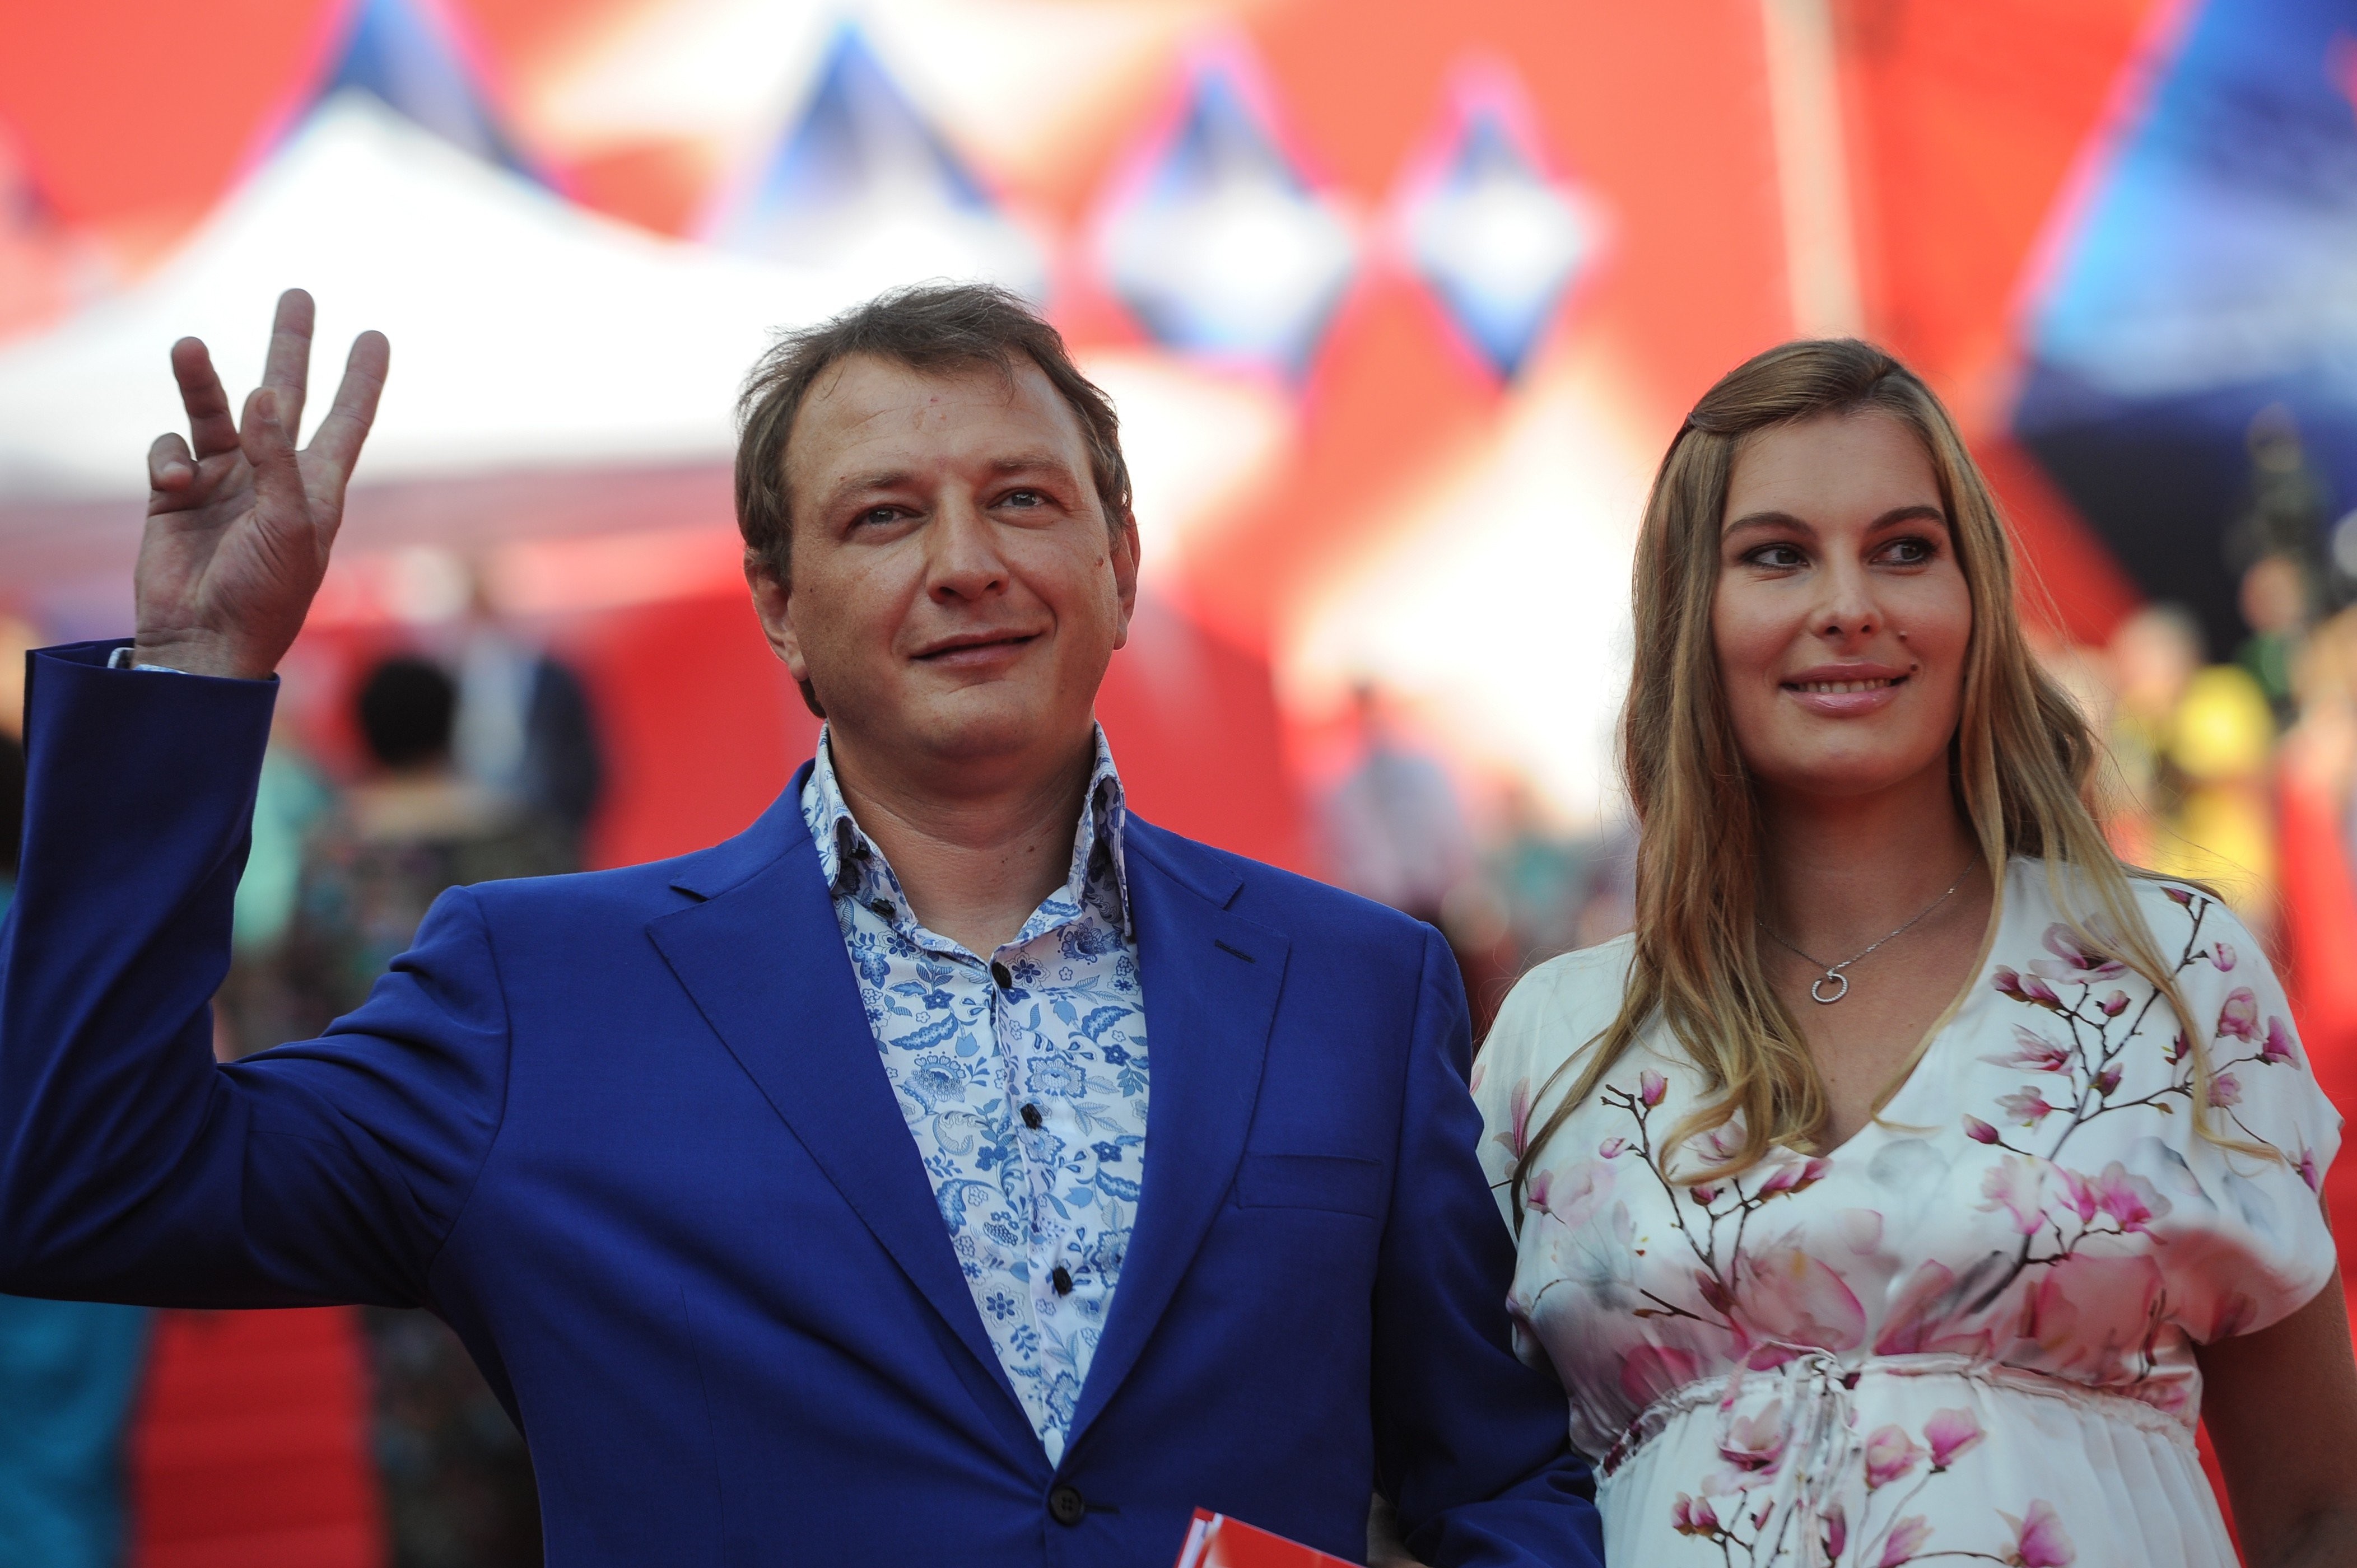 Марат Башаров и его супртуга Елизавета.&nbsp;Фото: &copy; Агентство городских новостей "Москва"/Любимов Андрей